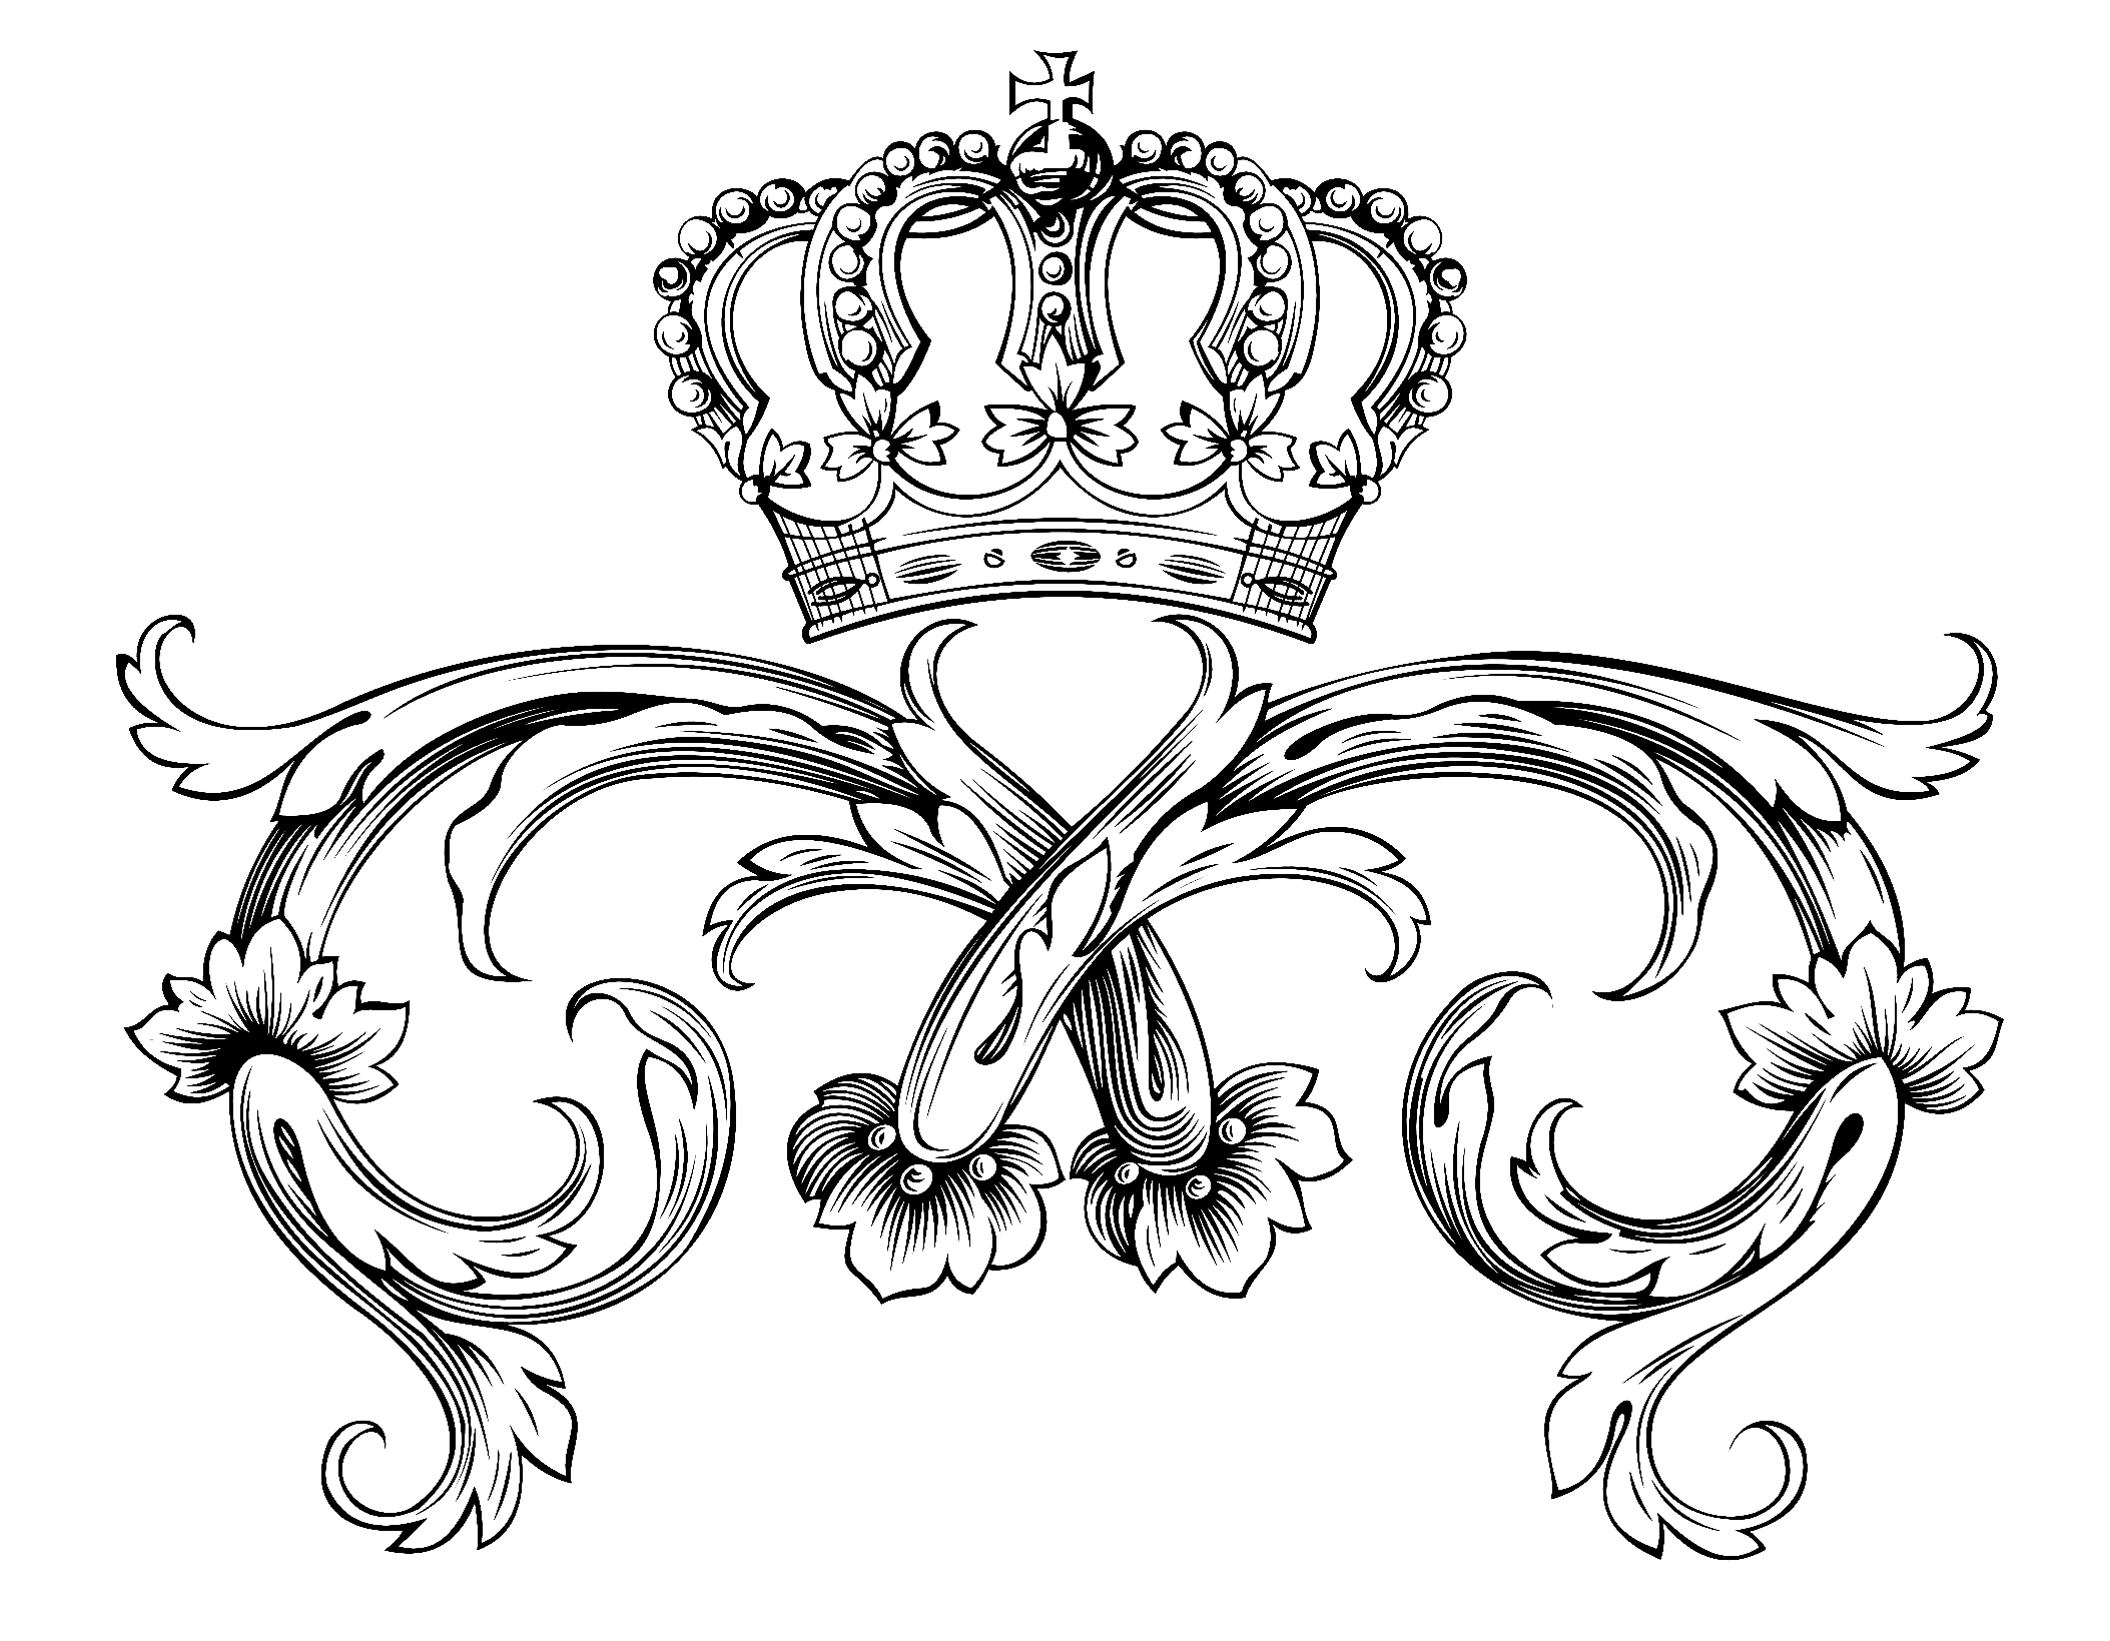 Desenhos para colorir de Reis e rainhas para baixar